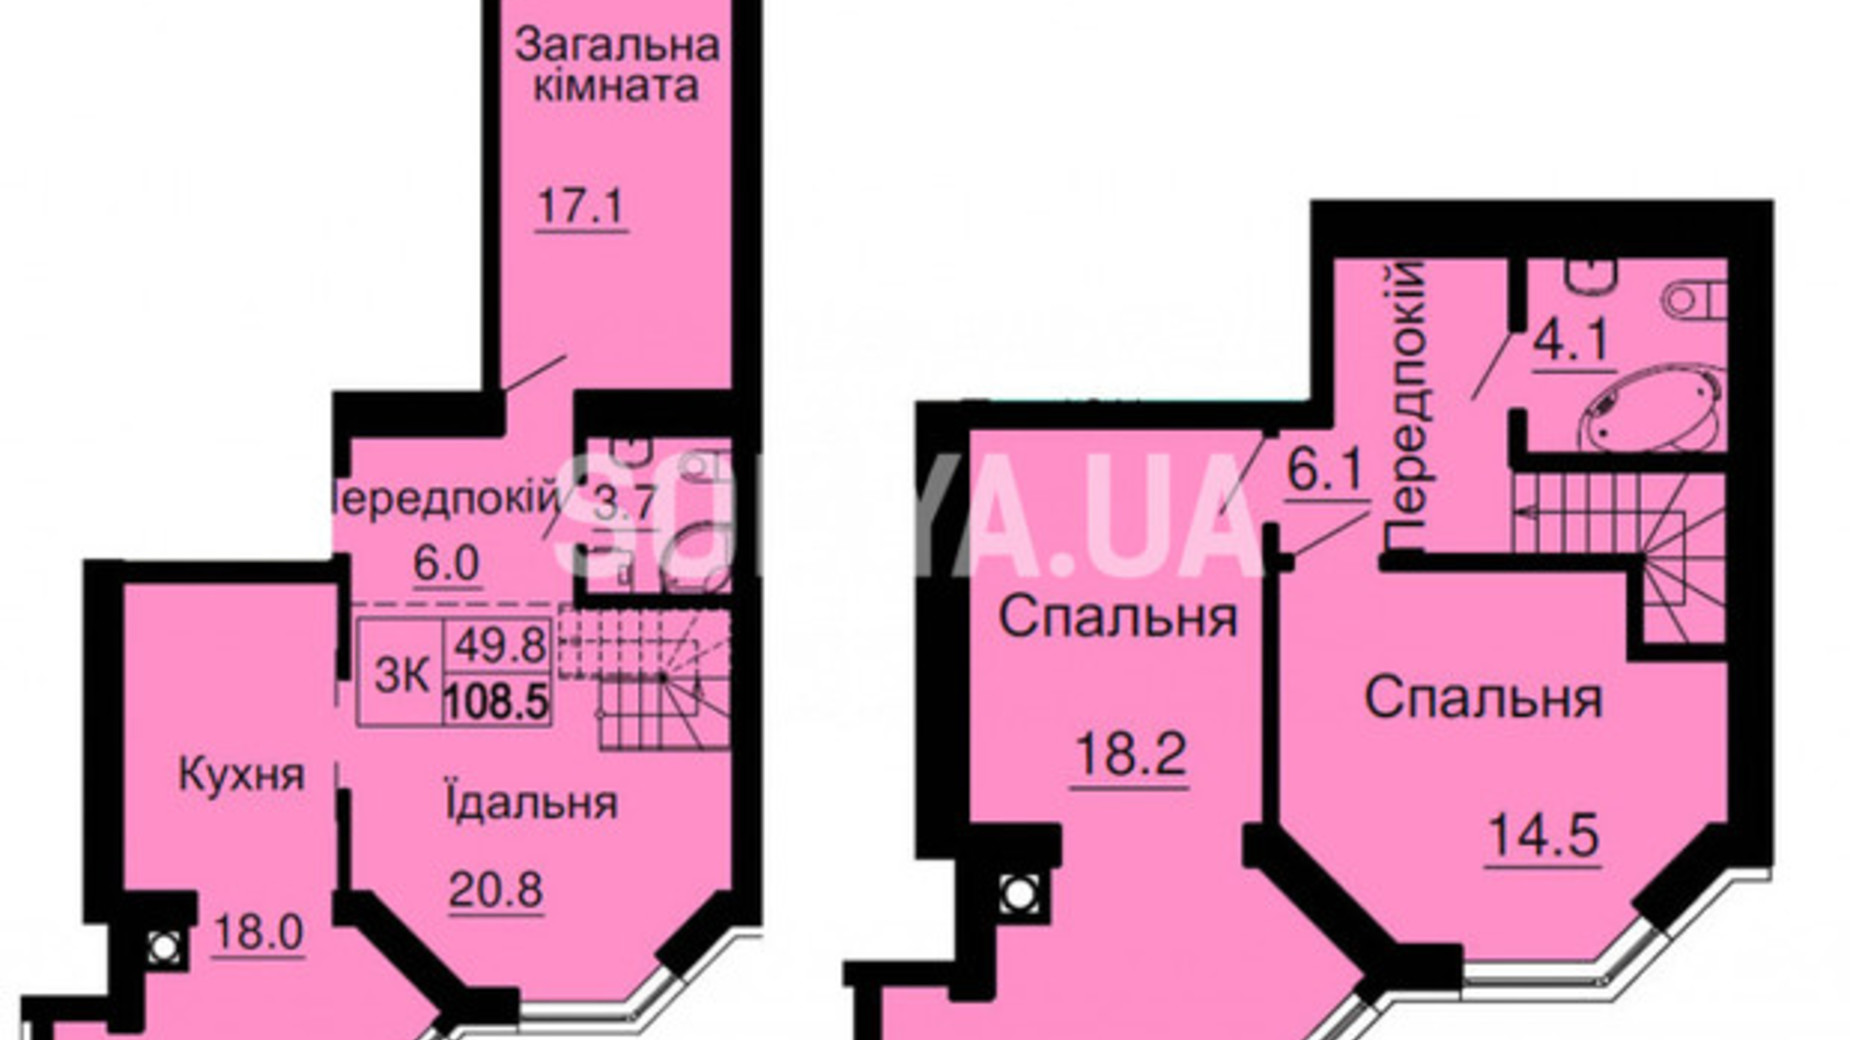 Планировка много­уровневой квартиры в ЖК Sofia Nova 108.5 м², фото 589140